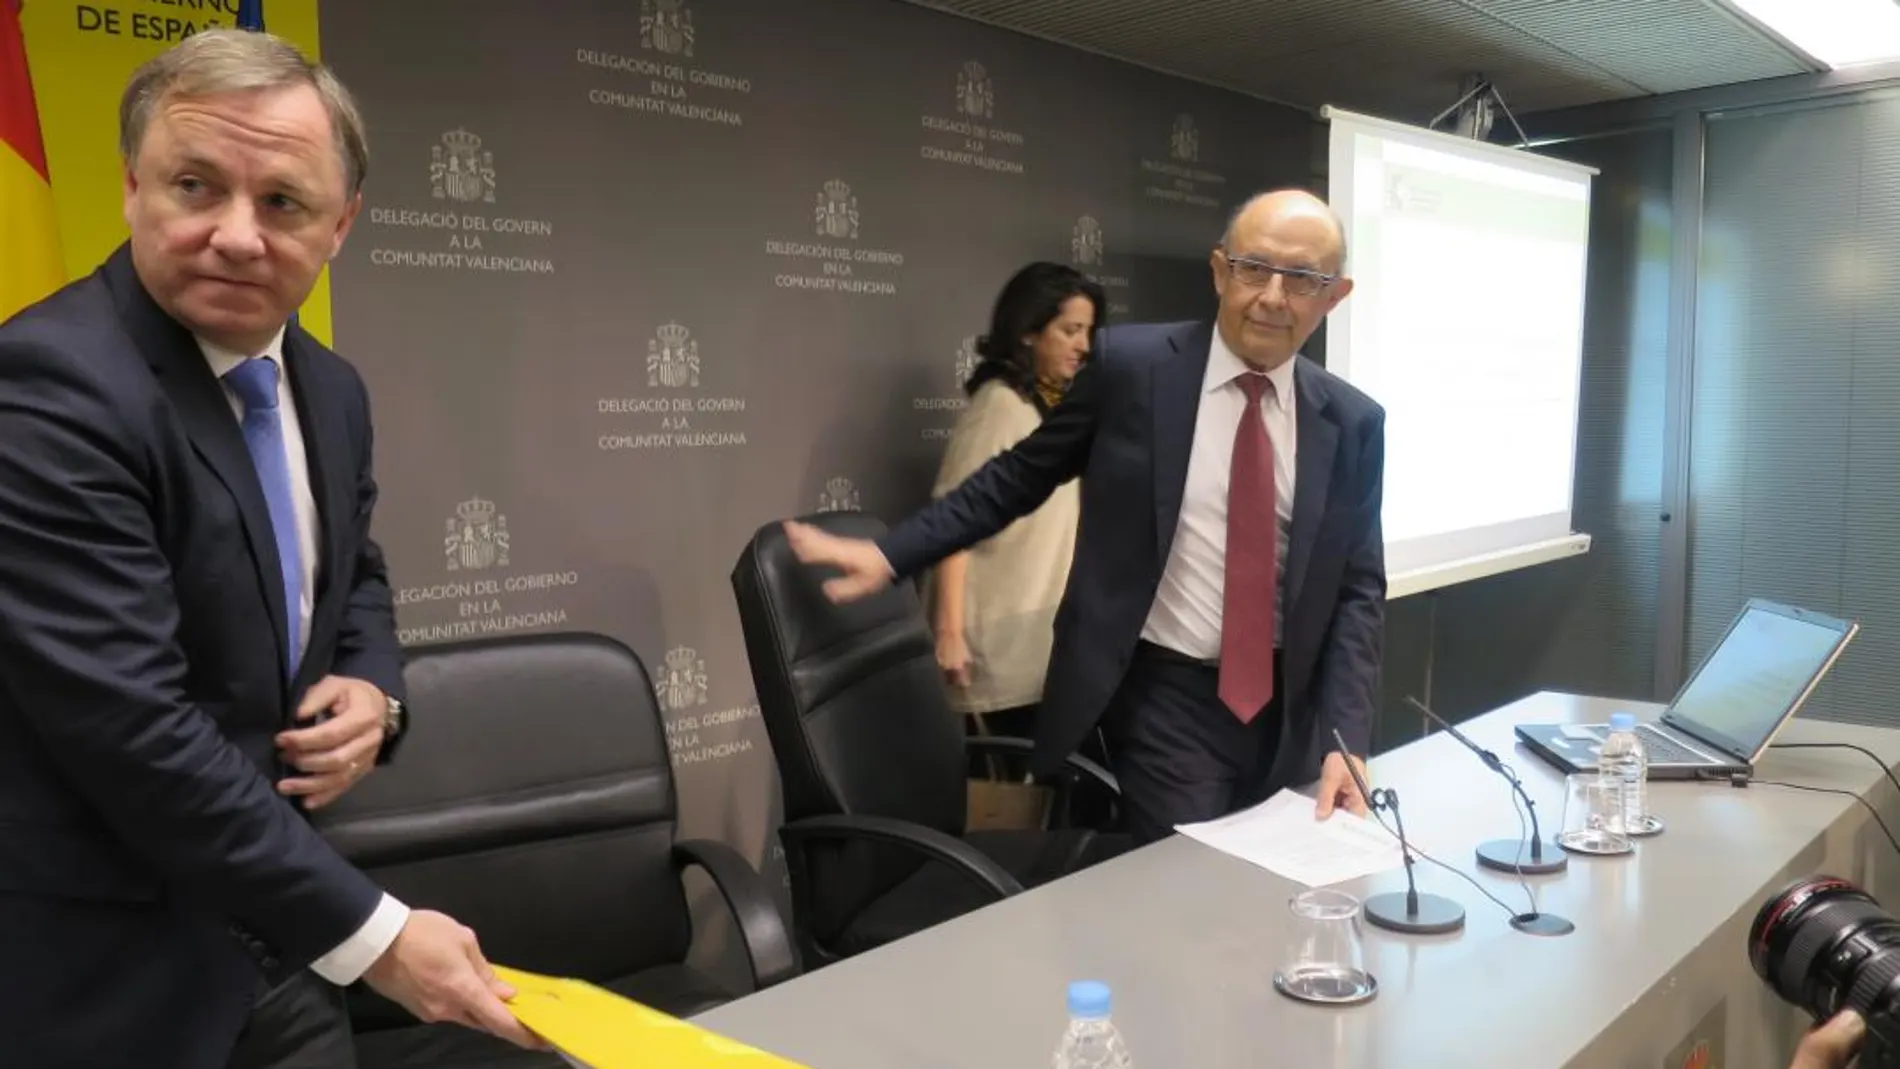 El delegado del Gobierno en la Comunitat Valenciana, Juan Carlos Moragues, junto al ministro de Hacienda, Cristóbal Montoro, en una imagen de archivo tras una comparecencia ante los medios de comunicación.